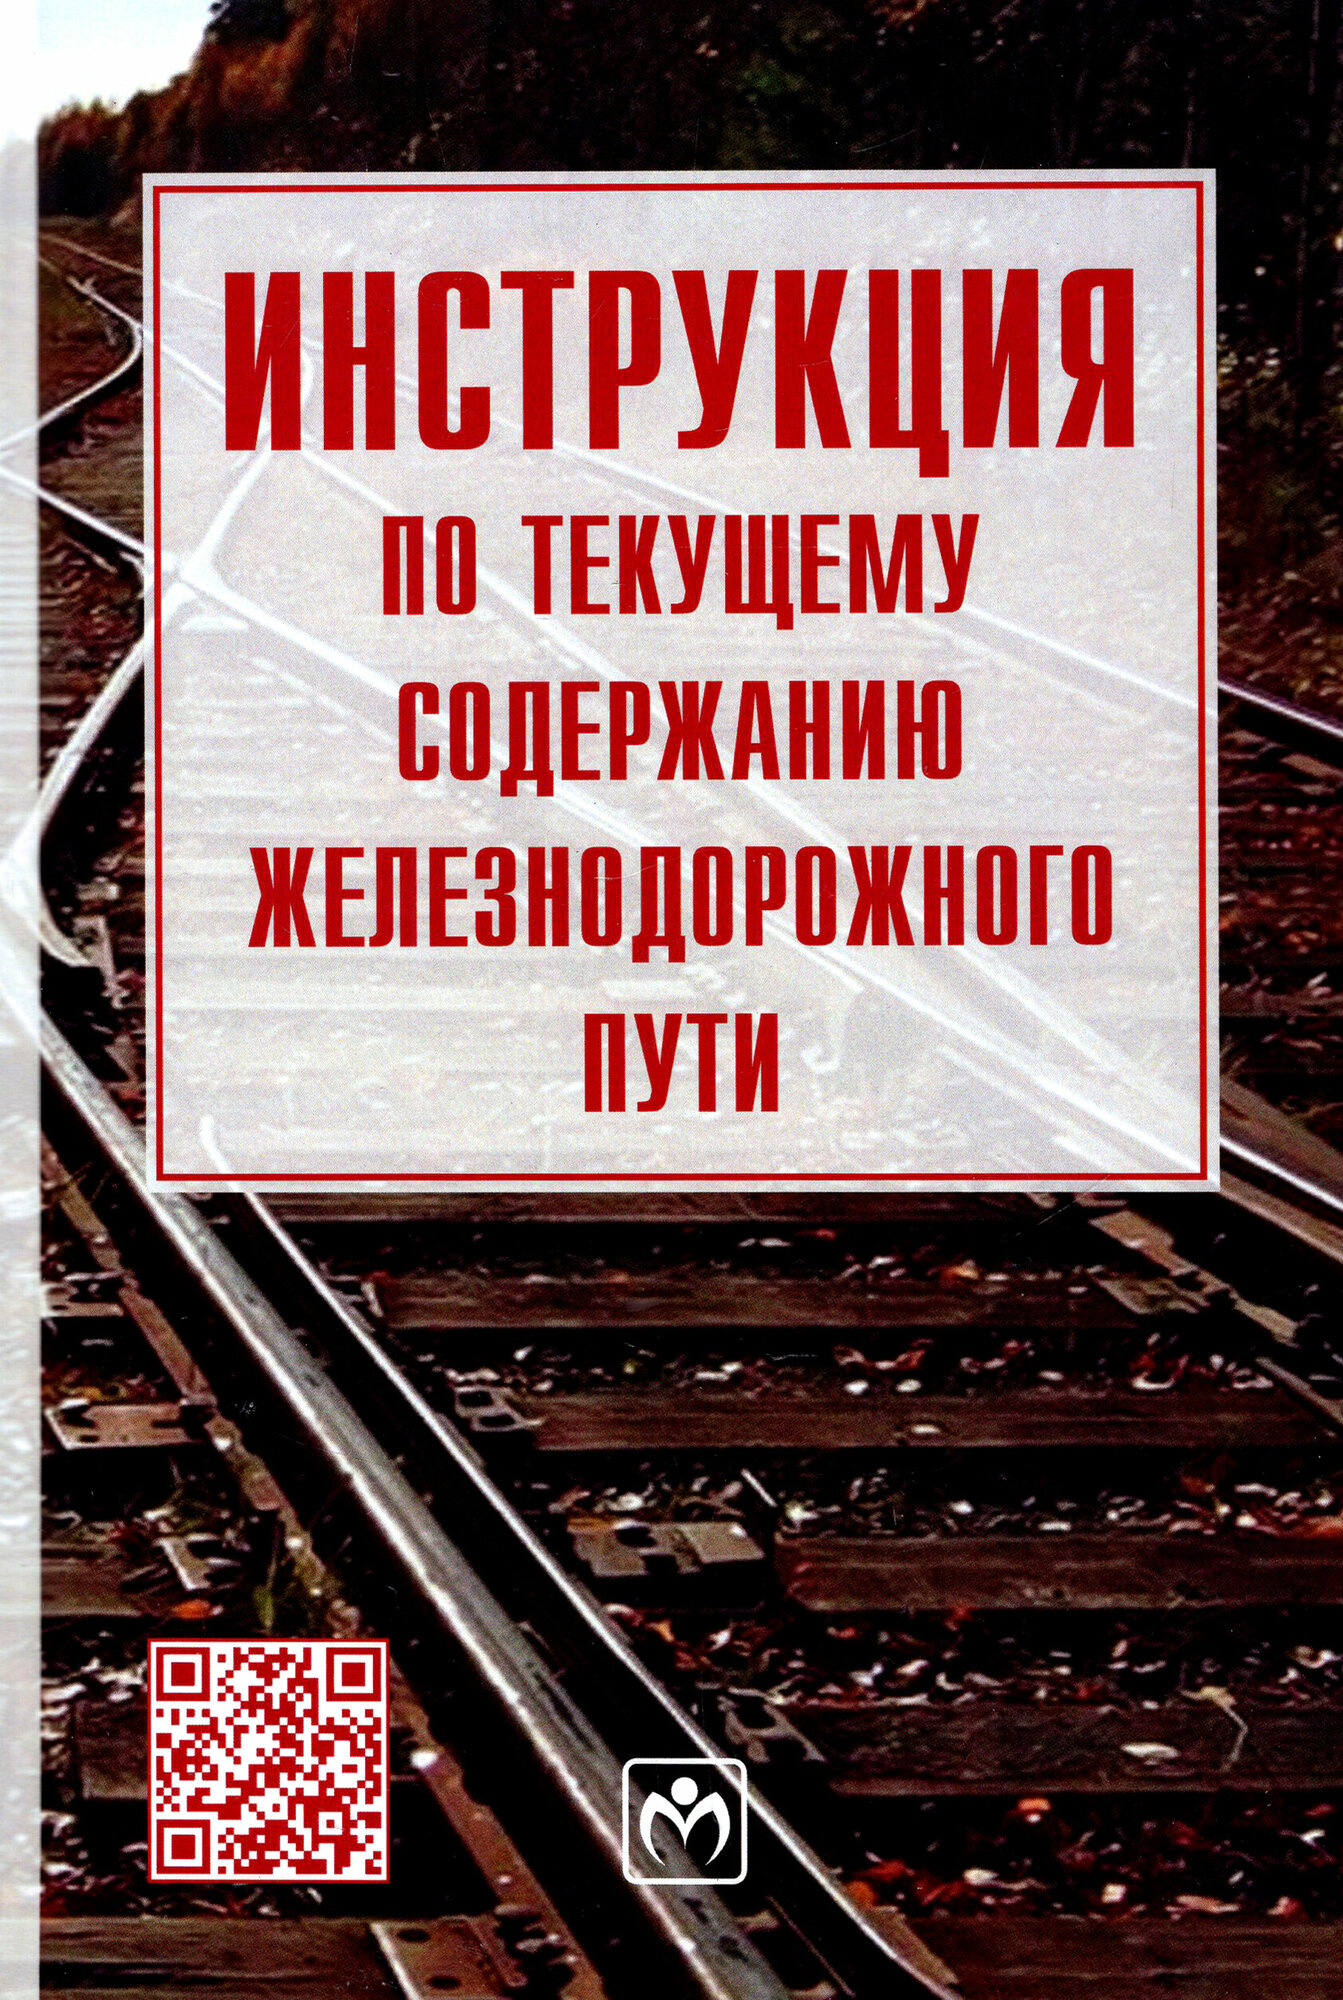 Инструкция по текущему содержанию железнодорожного пути - фото №3